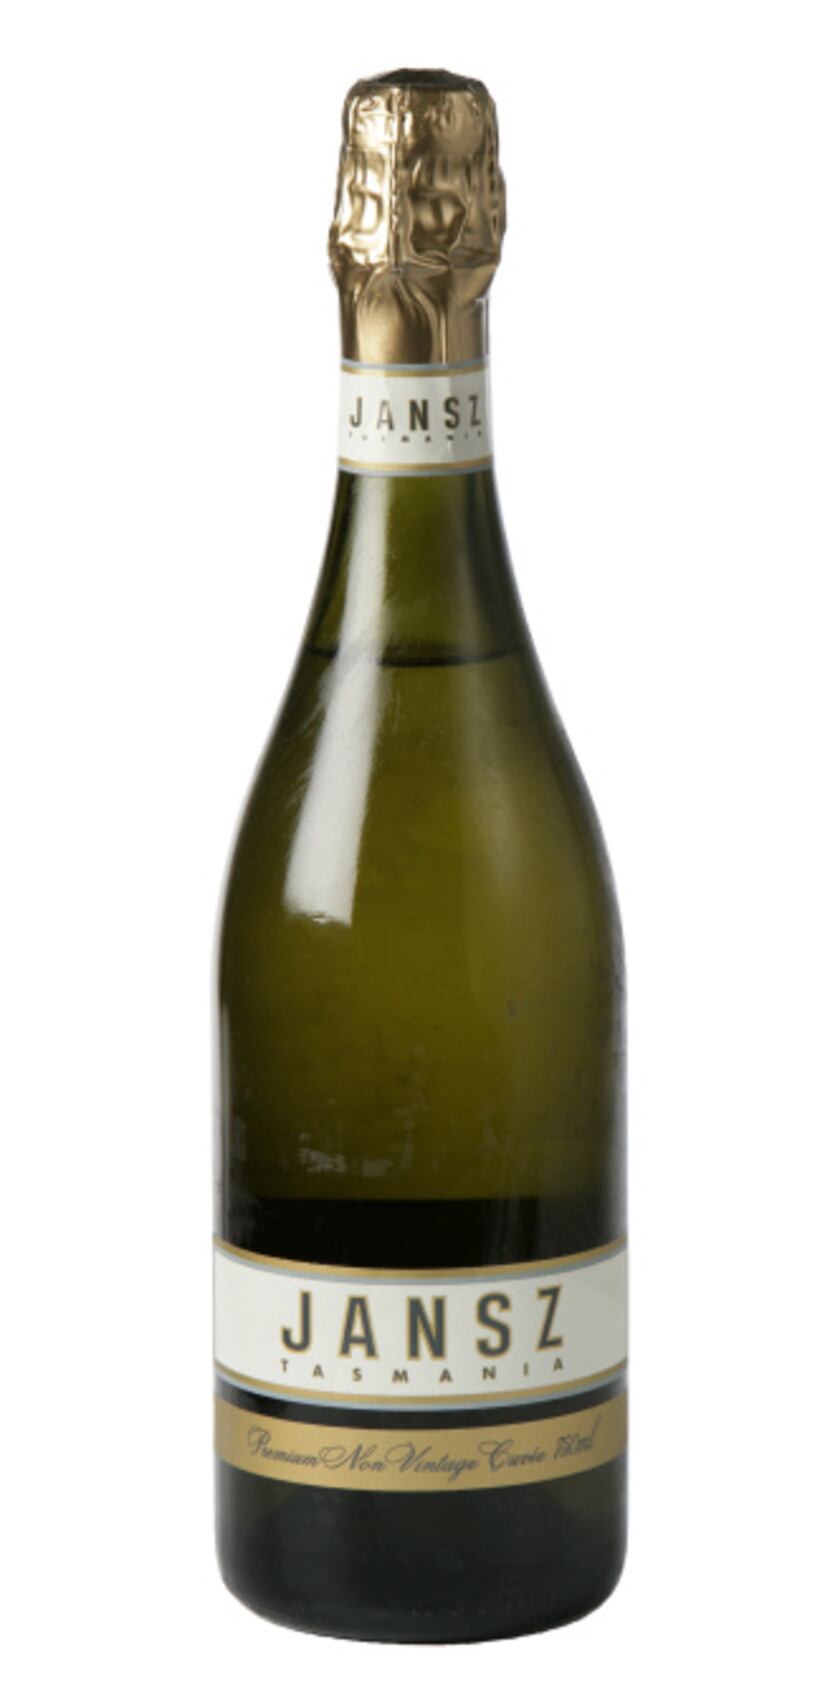 Jansz Premium Non-vintage Cuvée, Tasmania. $20.89; Spec’s